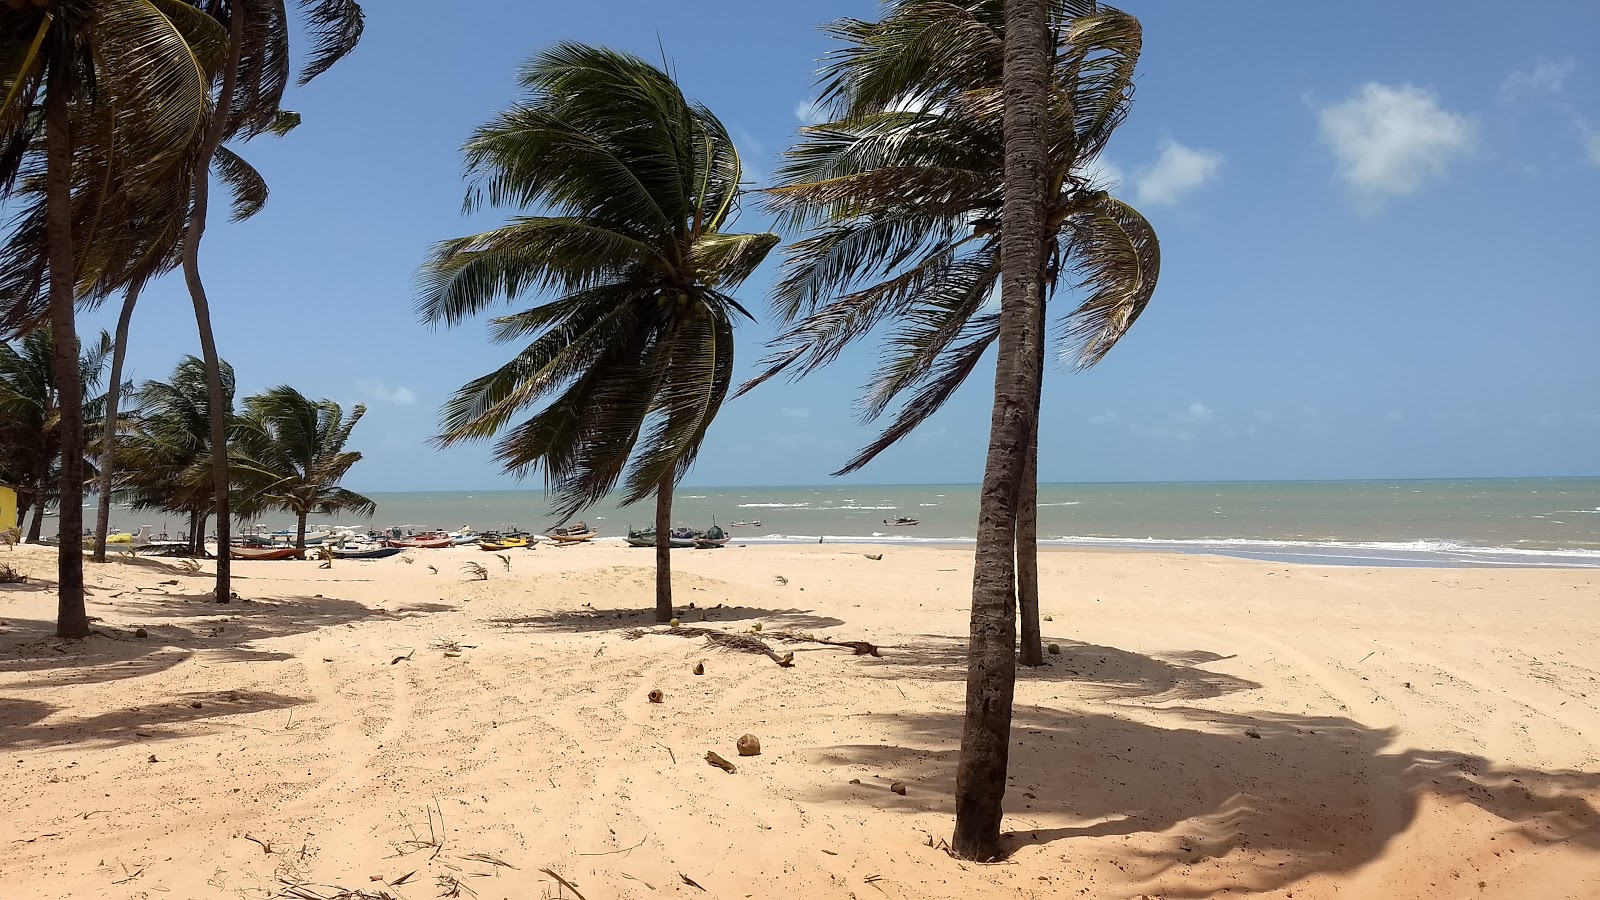 Fotografie cu Praia de Zumbi - locul popular printre cunoscătorii de relaxare